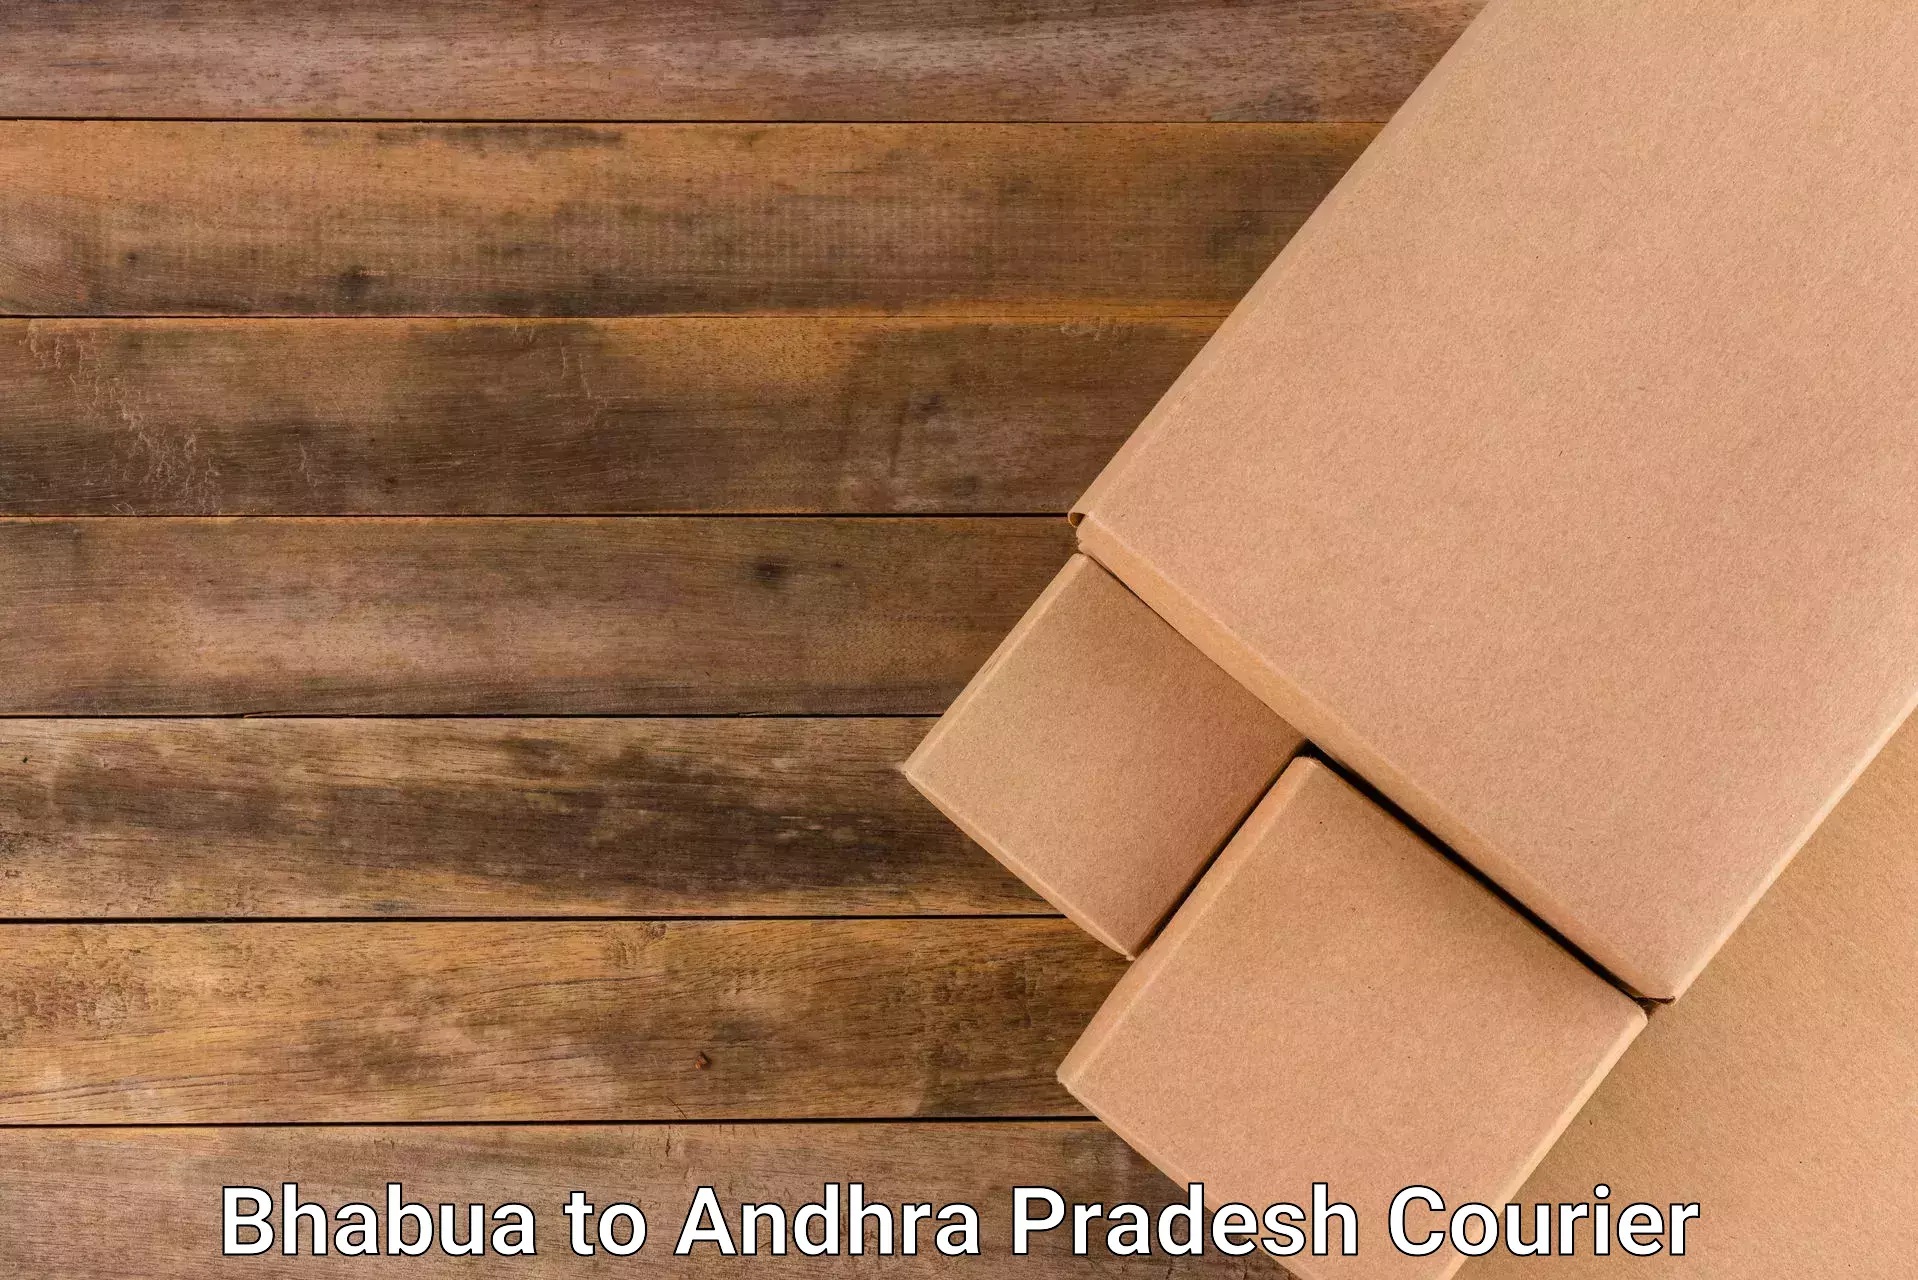 Large package courier Bhabua to Porumamilla